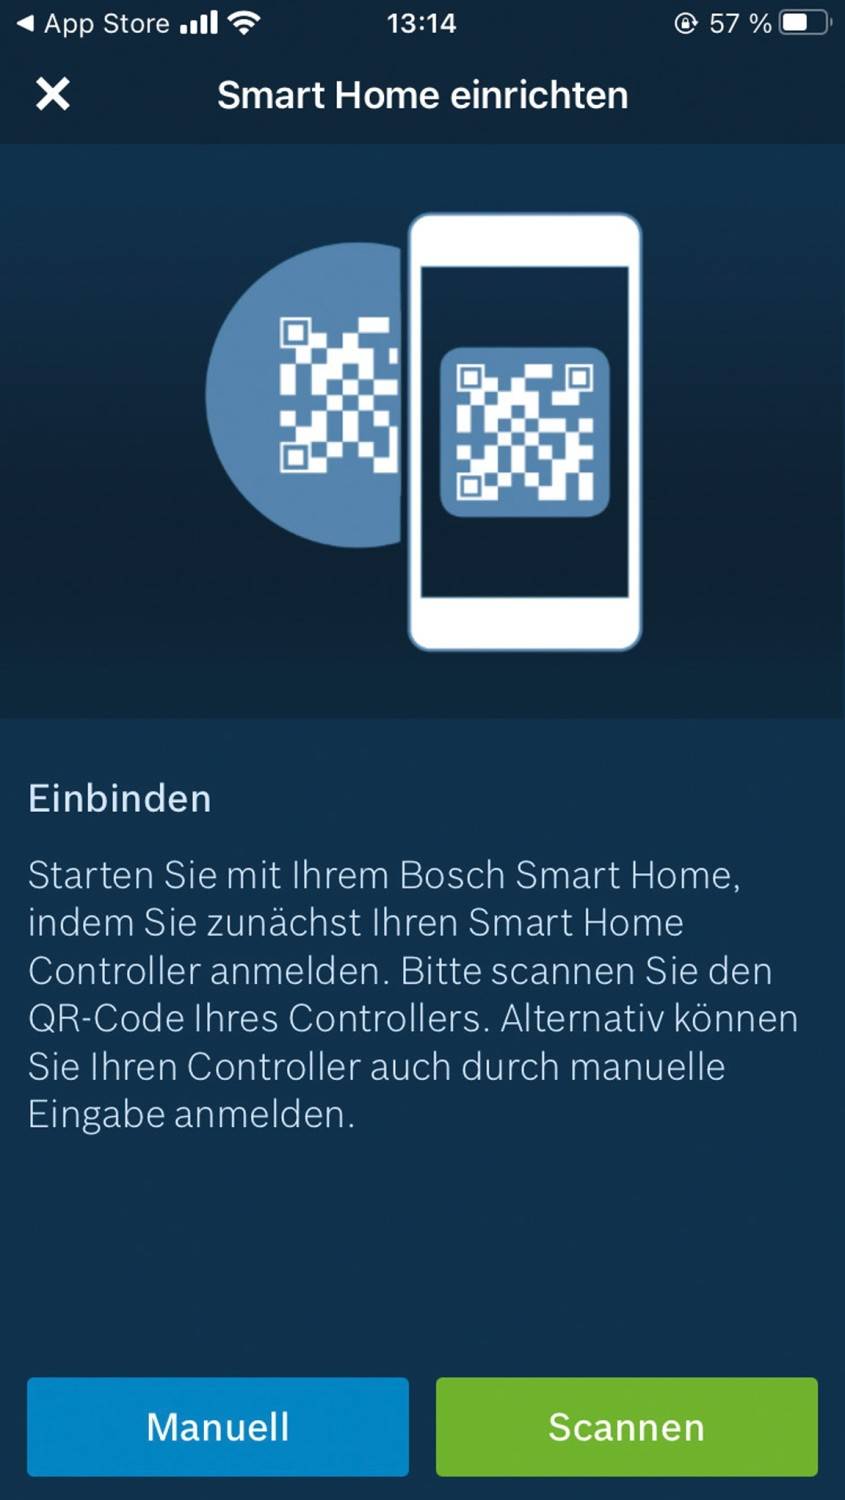 Smart Home System Bosch Smart Home im Test, Bild 6